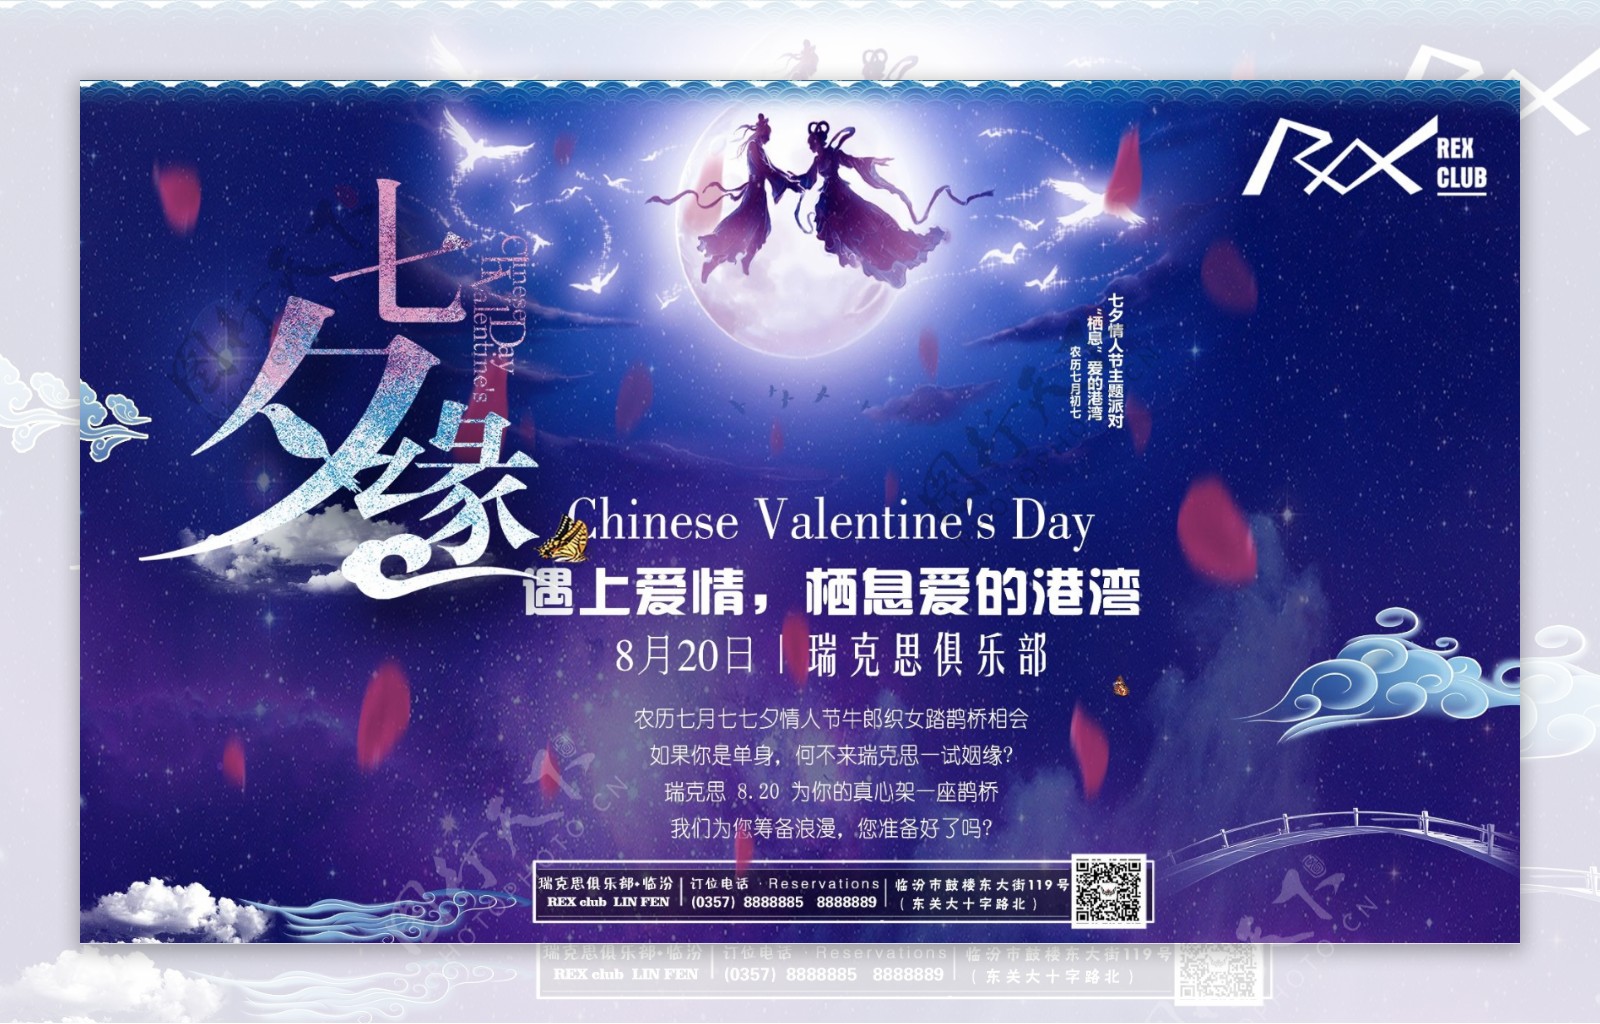 酒吧七夕情人节主题派对海报喷绘